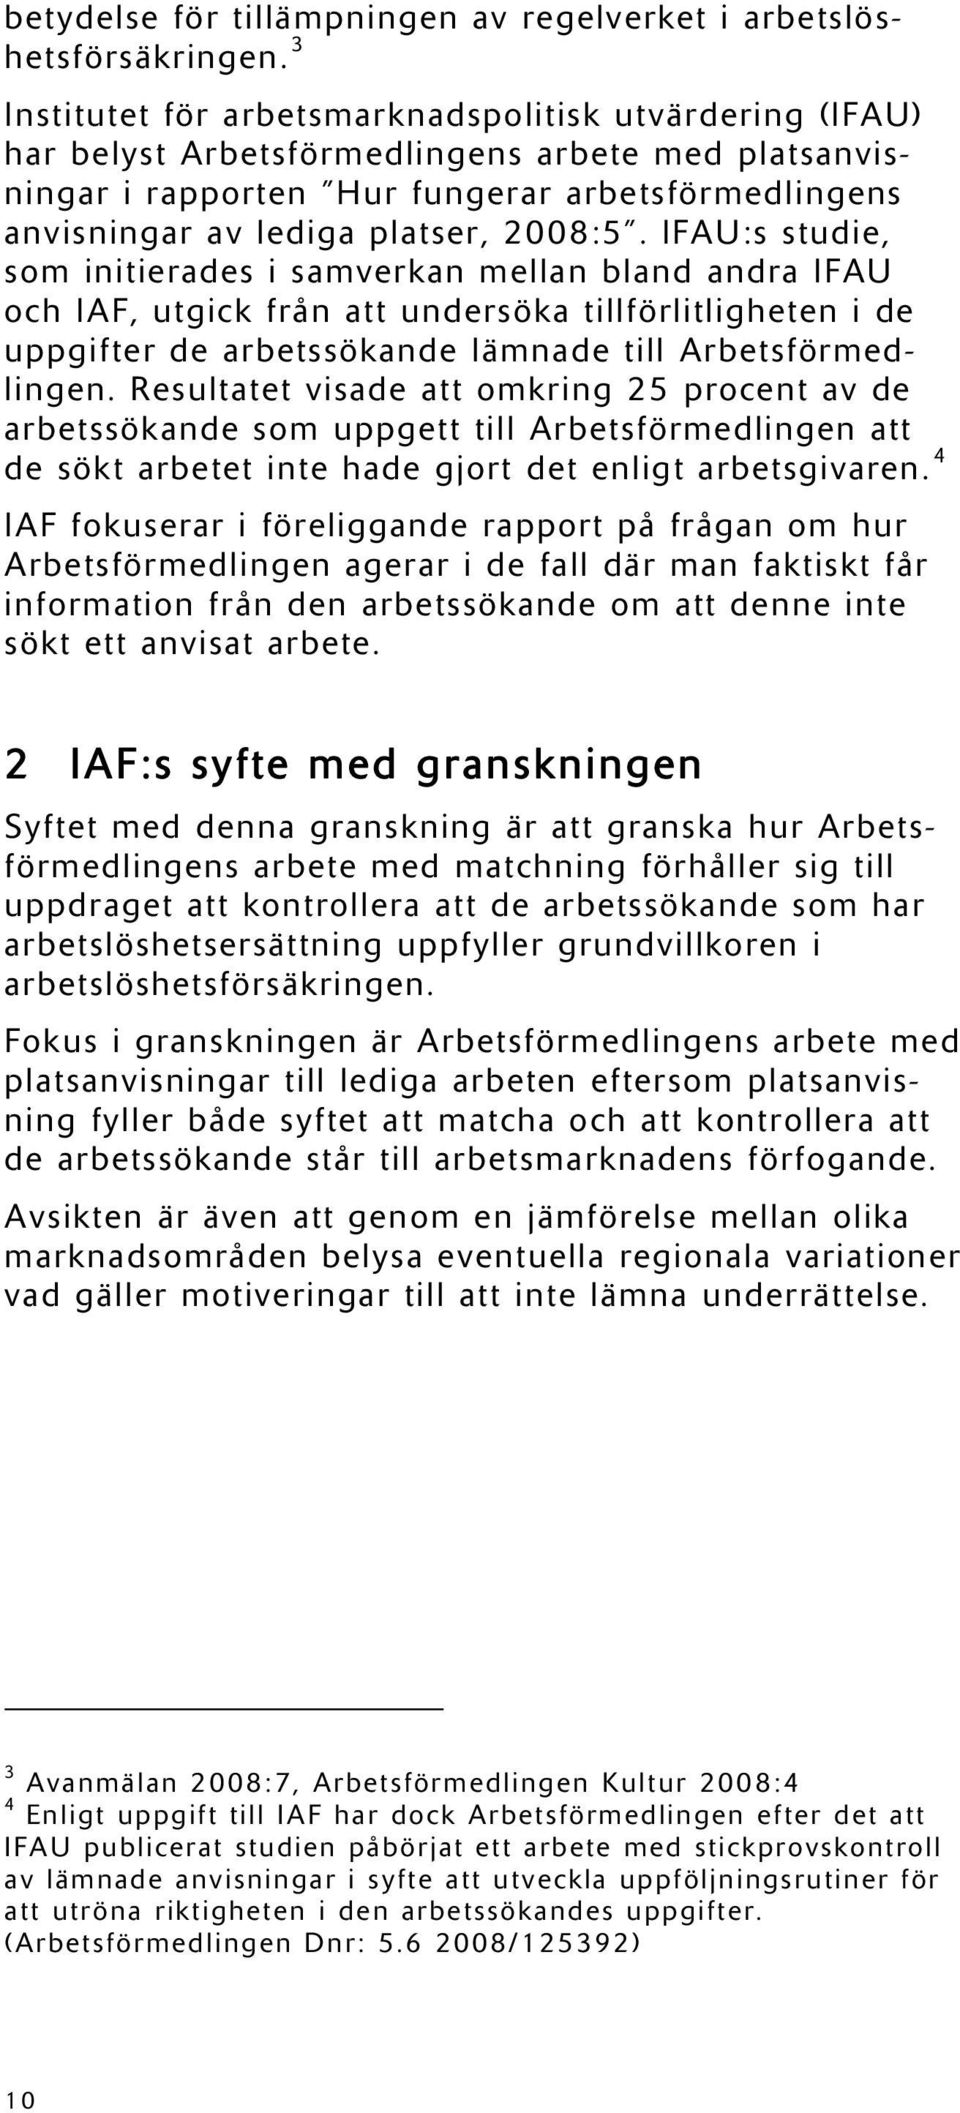 2008:5. IFAU:s studie, som initierades i samverkan mellan bland andra IFAU och IAF, utgick från att undersöka tillförlitligheten i de uppgifter de arbetssökande lämnade till Arbetsförmedlingen.